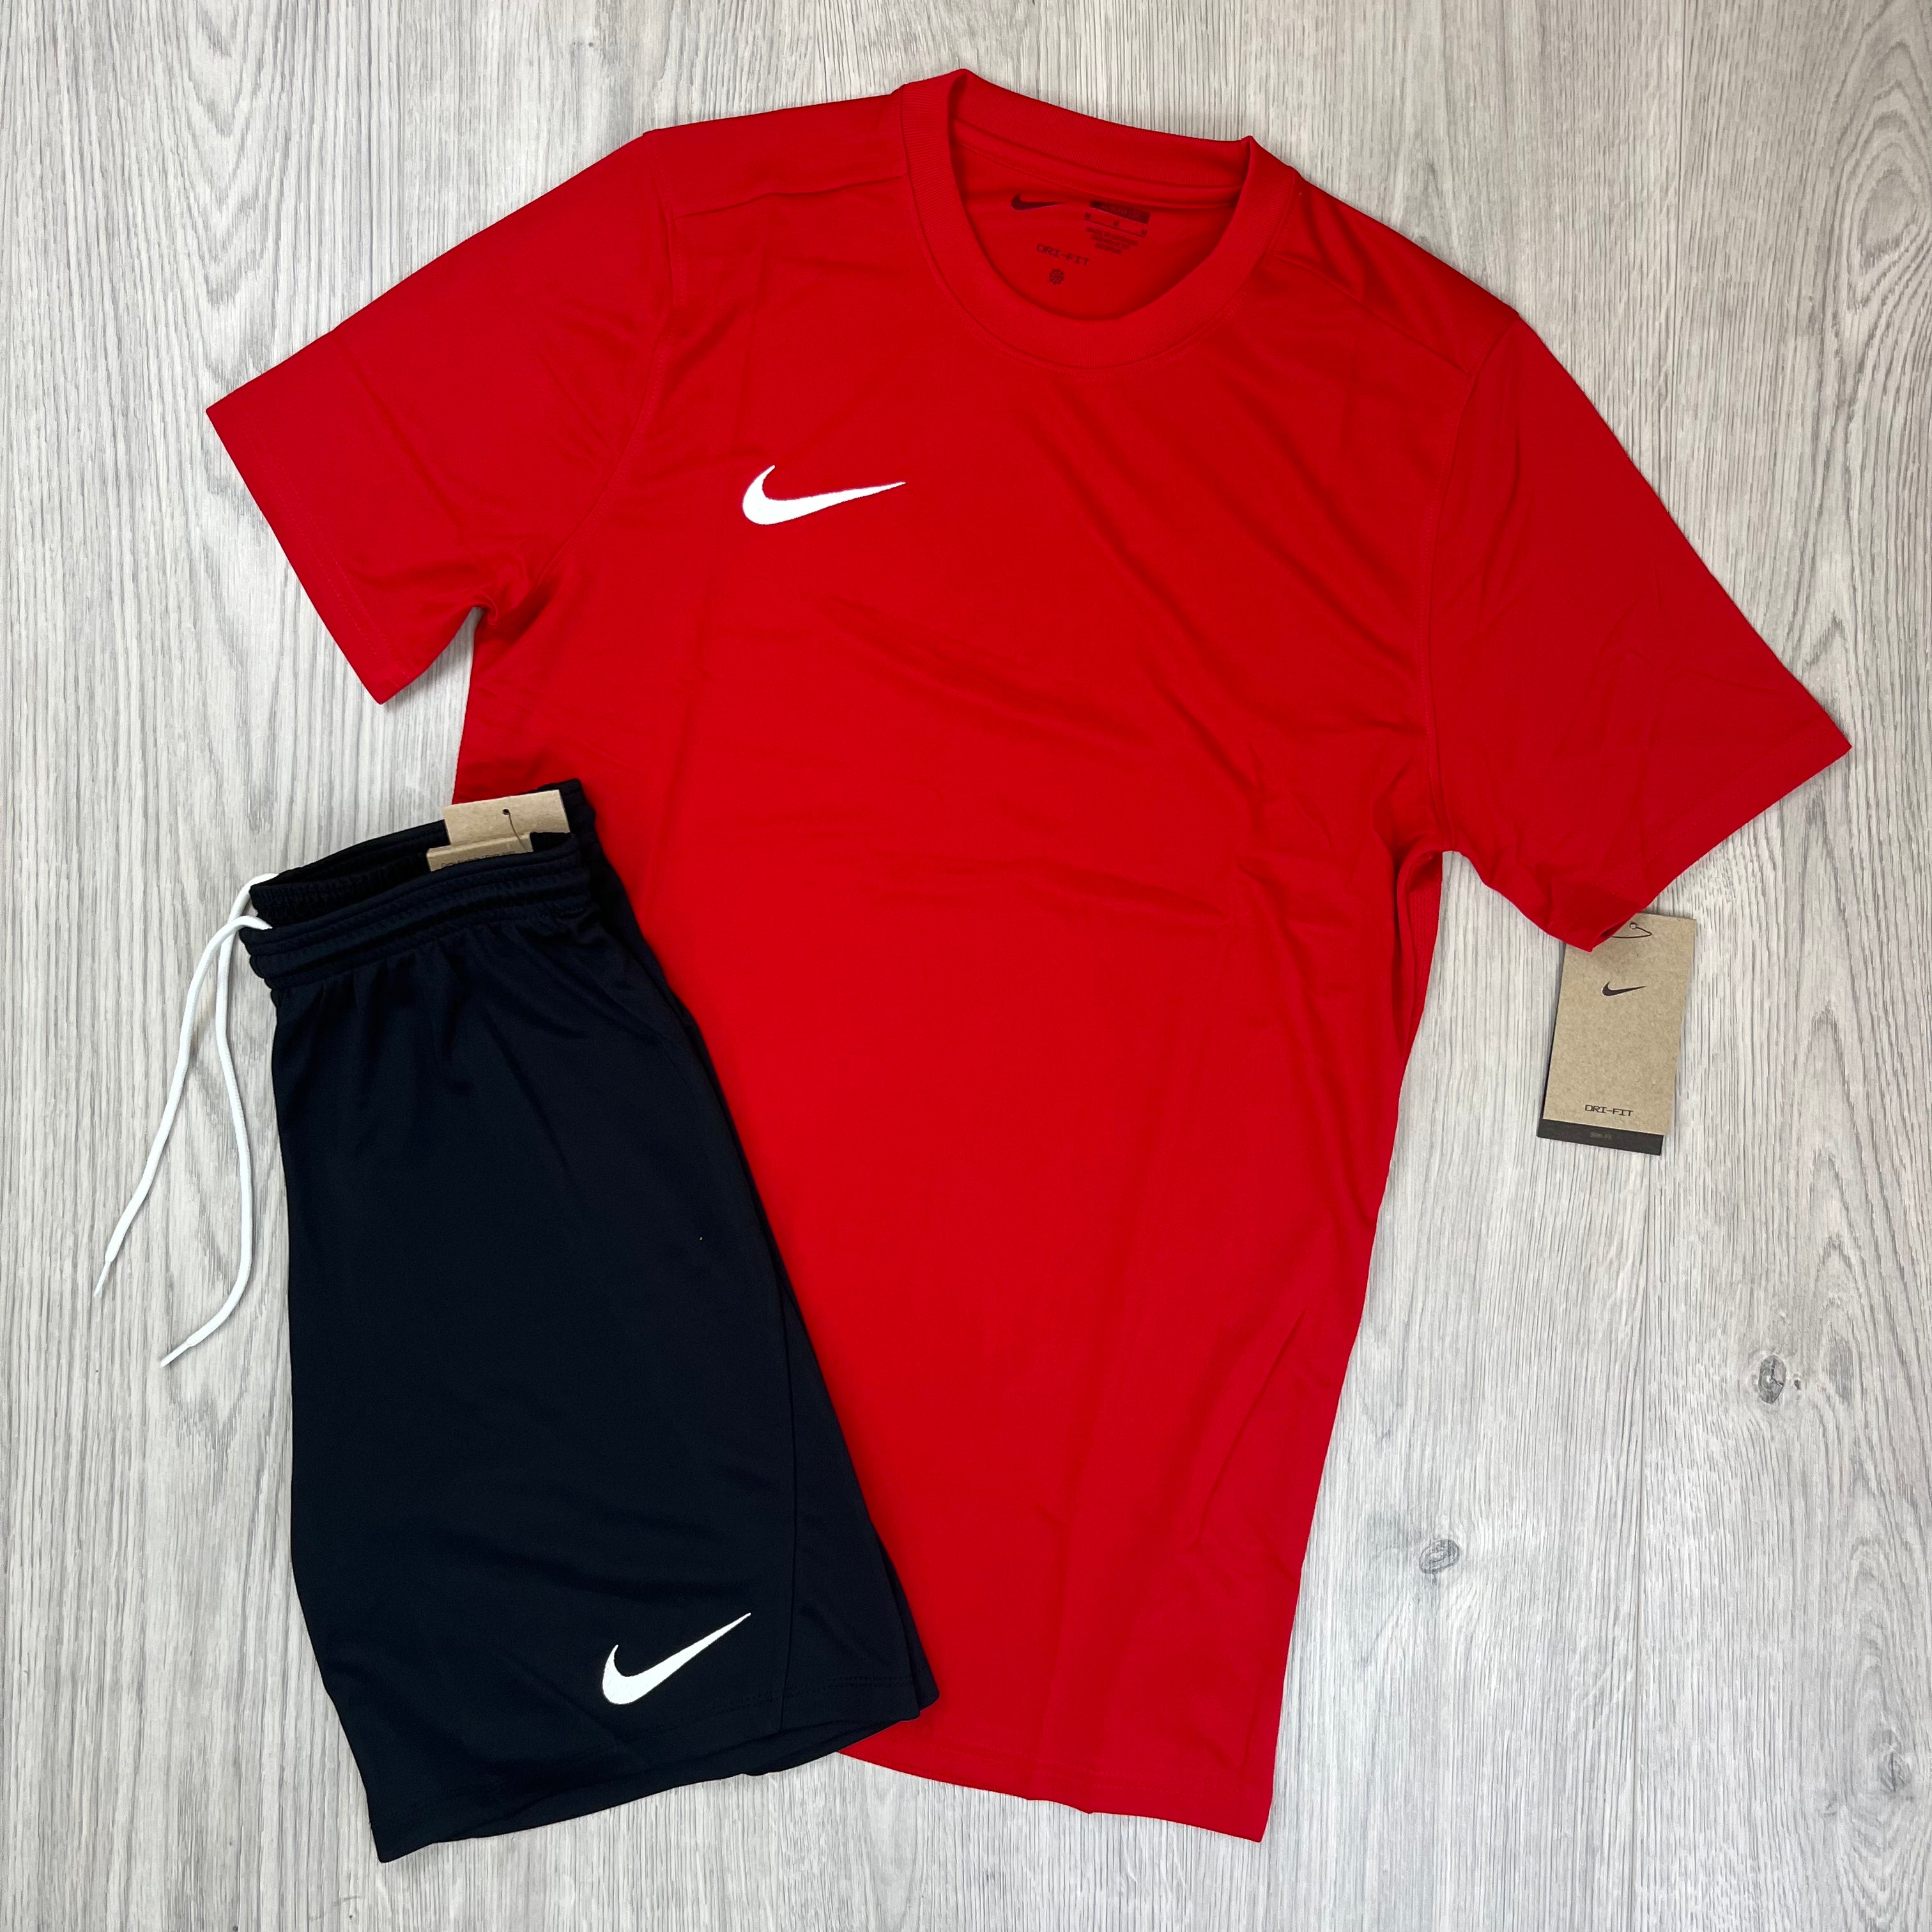 Nike Dri-Fit Set - Red/Black